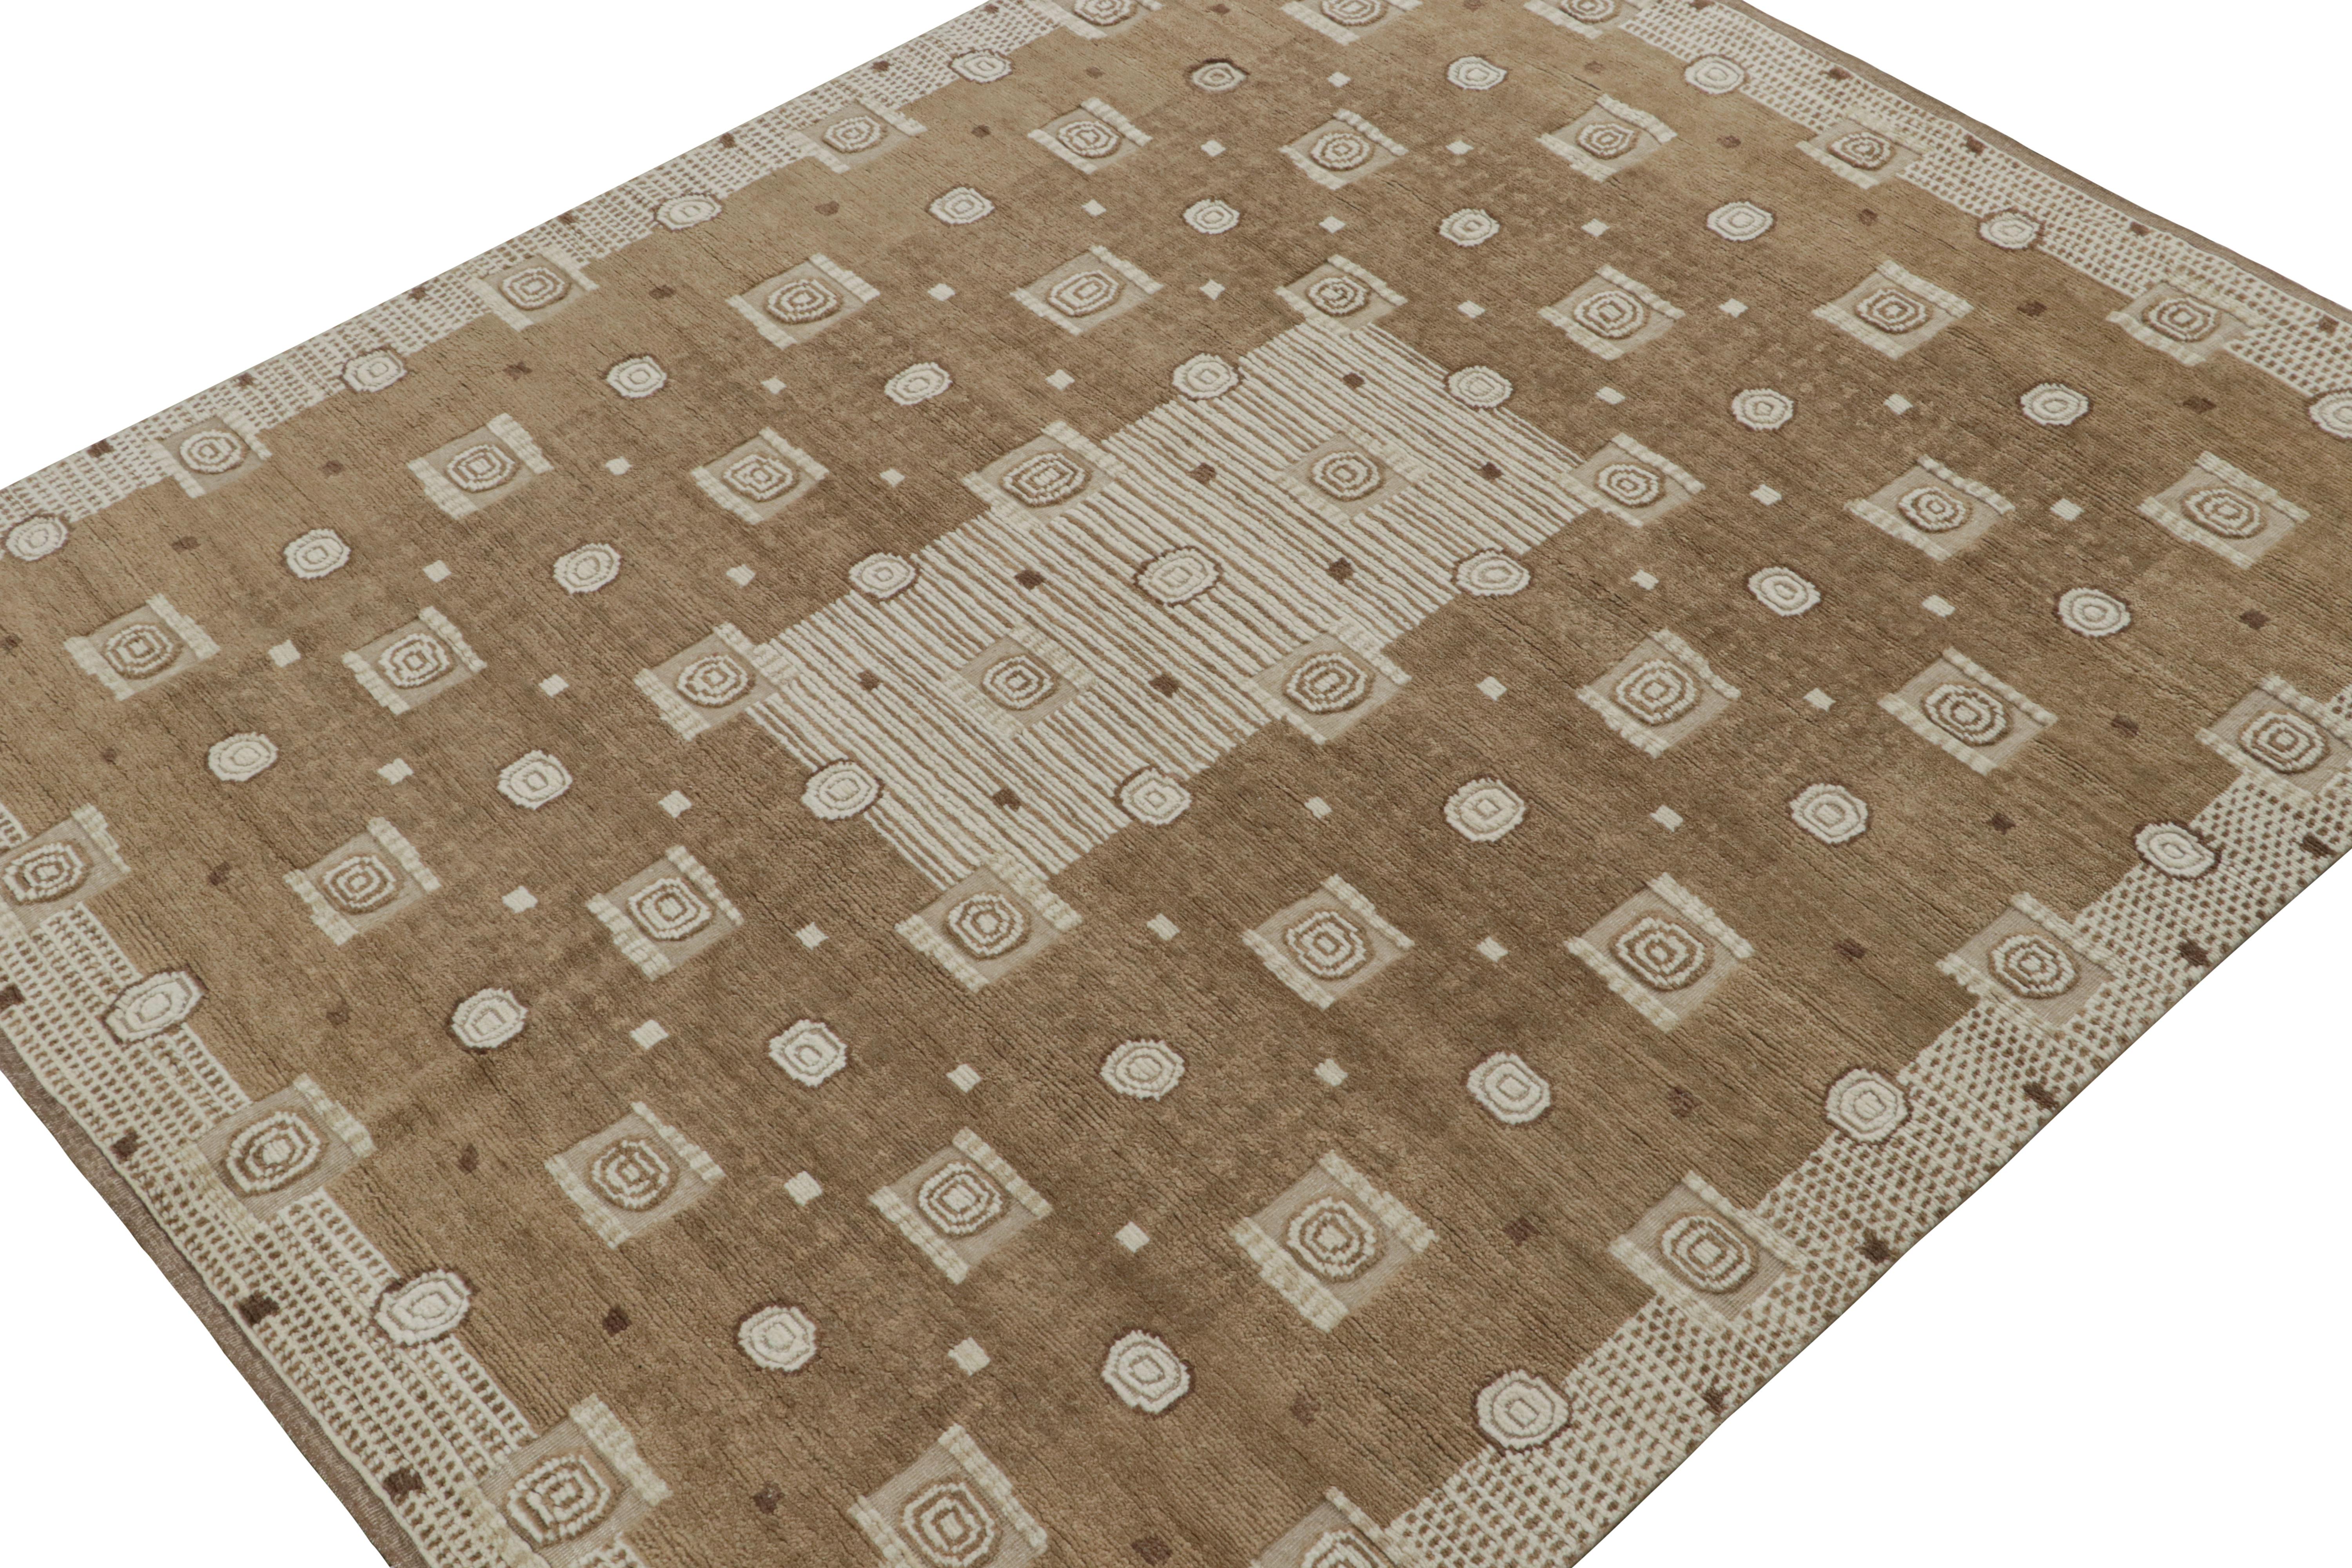 Noué à la main en laine, ce modèle de tapis personnalisé représente la ligne de poils de la collection de tapis scandinaves de Rug & Kilim. 

Sur le Design : 

Ces photos représentent un tapis 8x10 récemment vendu de cette collection, qui s'inspire